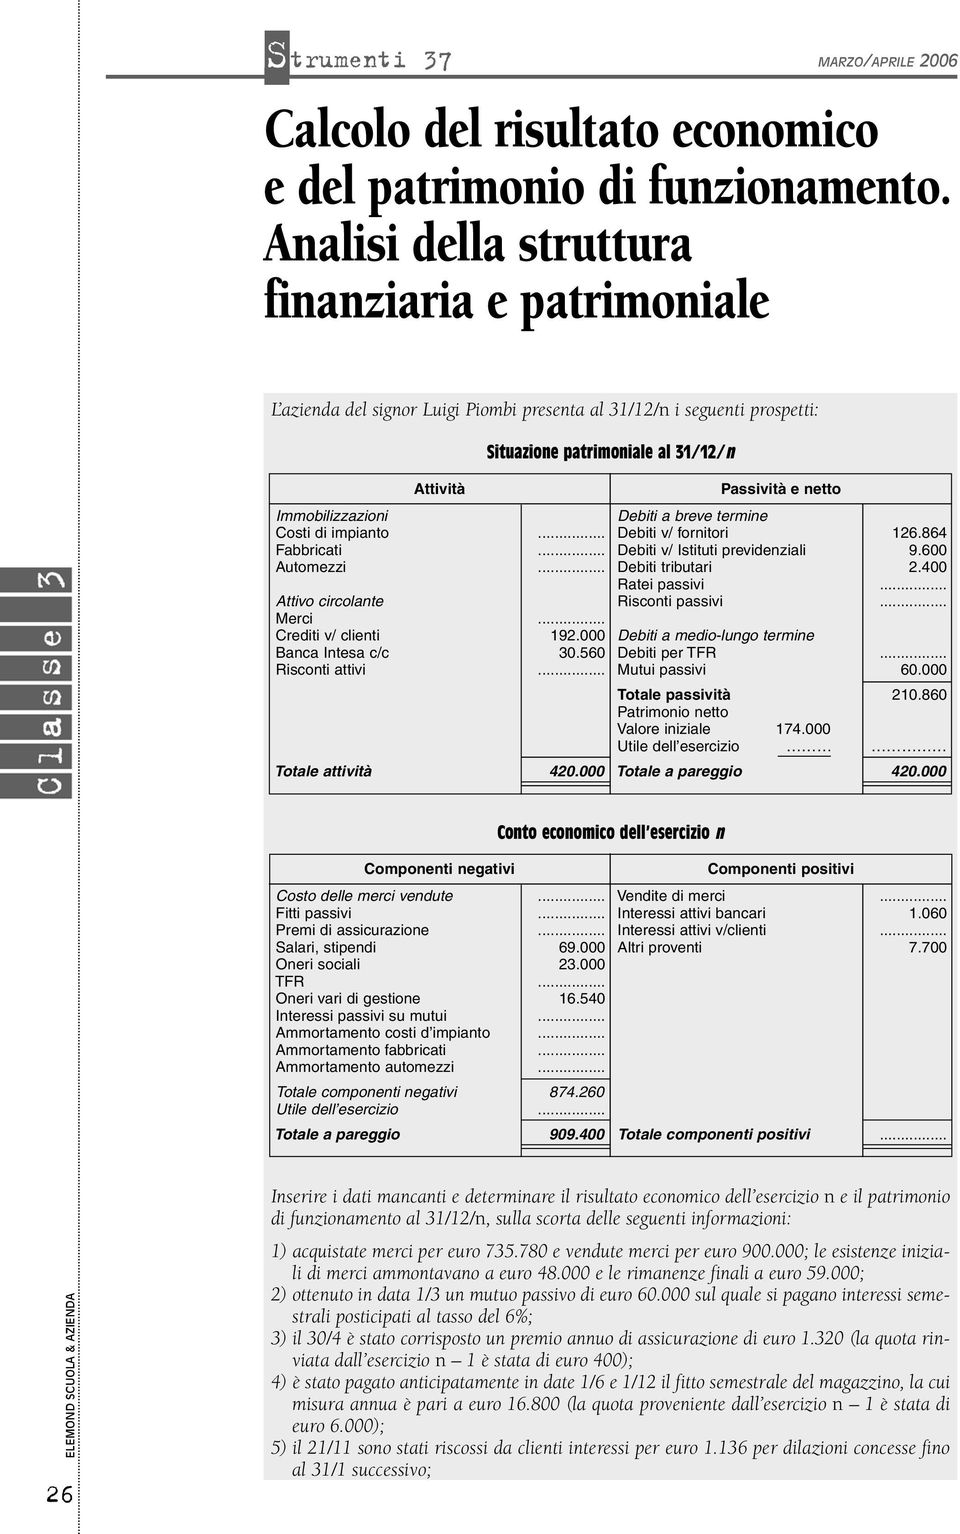 Immobilizzazioni Costi di impianto abbricati Automezzi Attivo circolante Merci Crediti v/ clienti Banca Intesa c/c Risconti attivi 192.000 30.